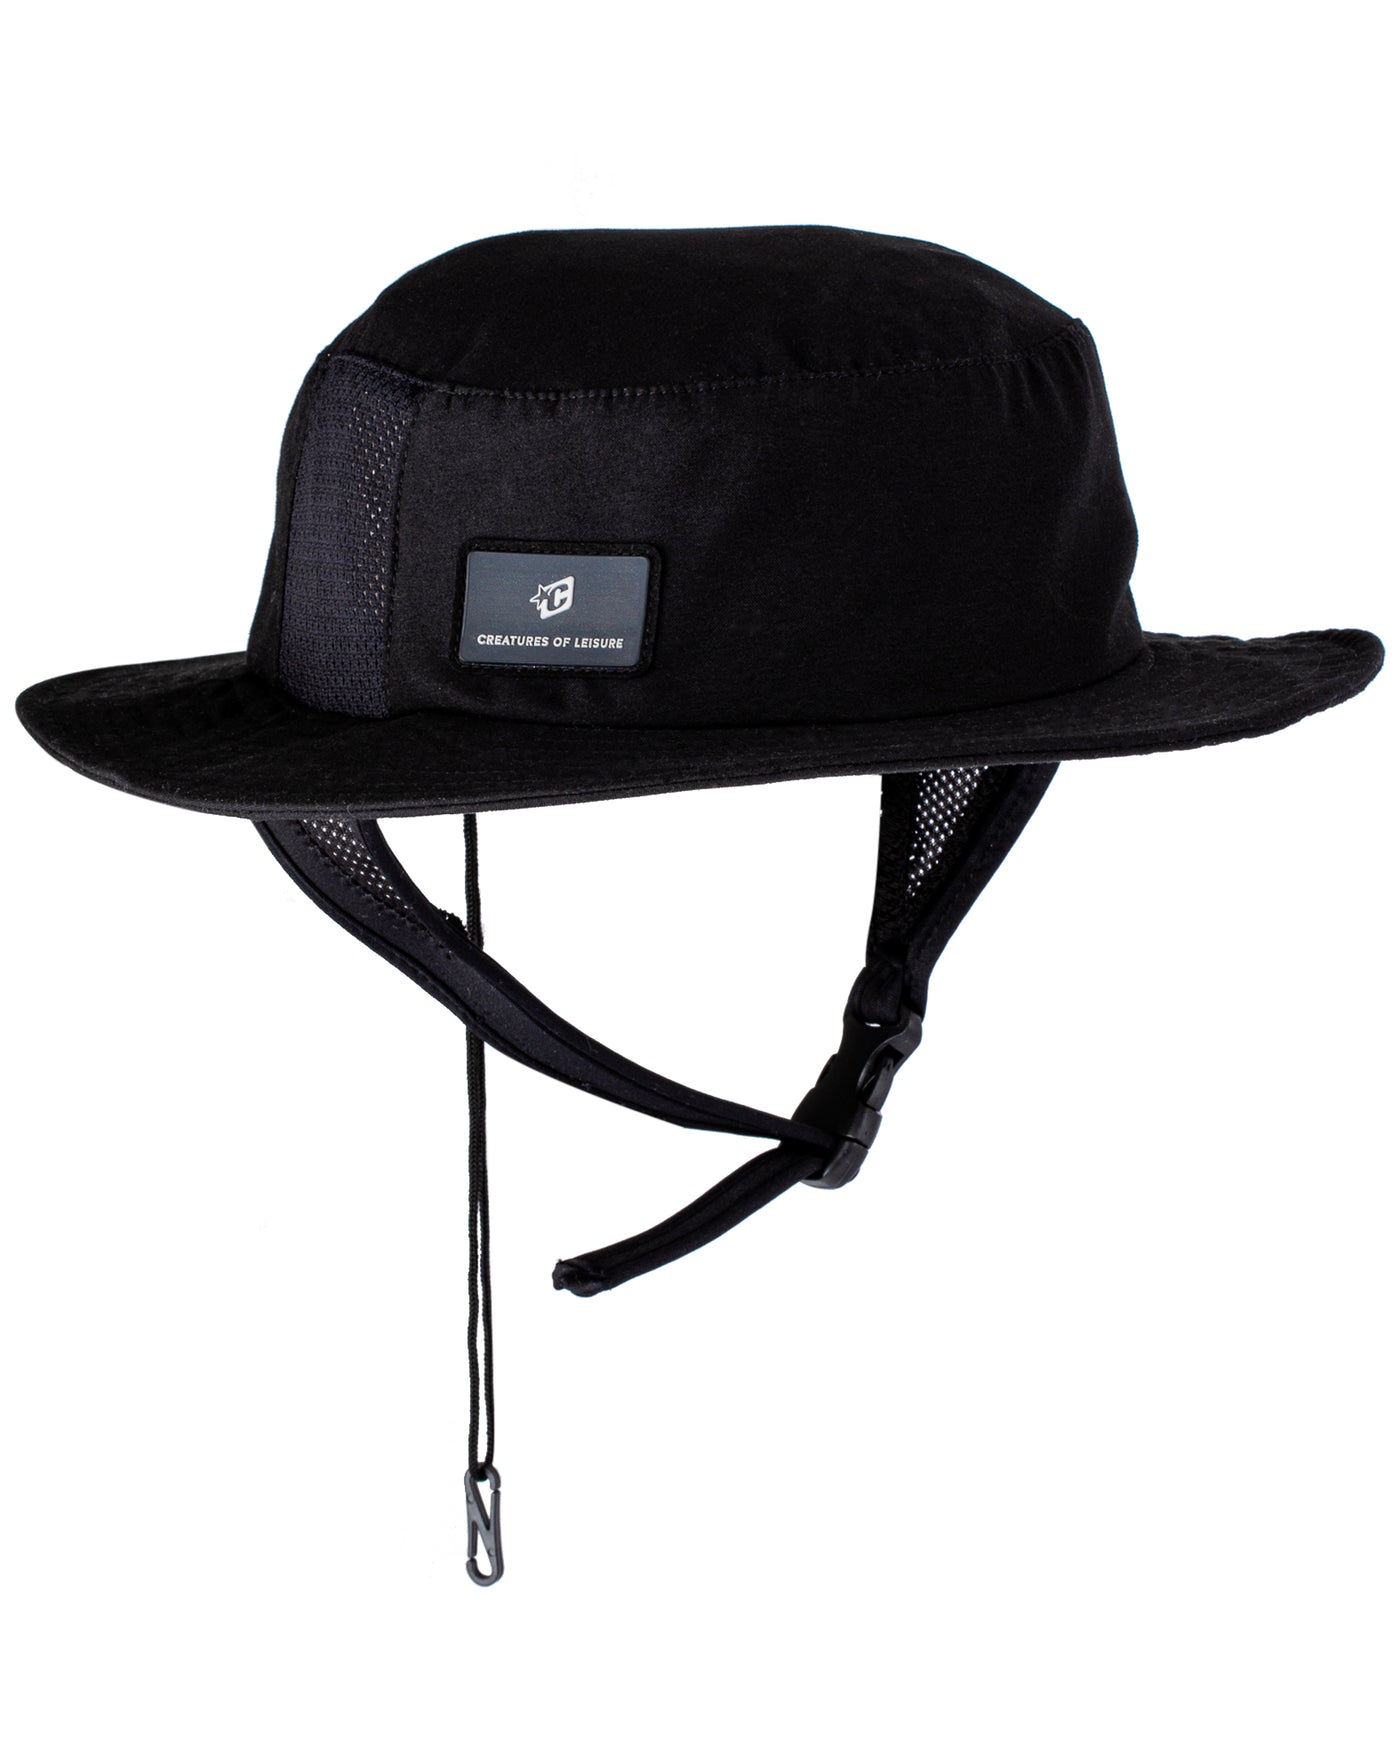 Surf Bucket Hat : Black